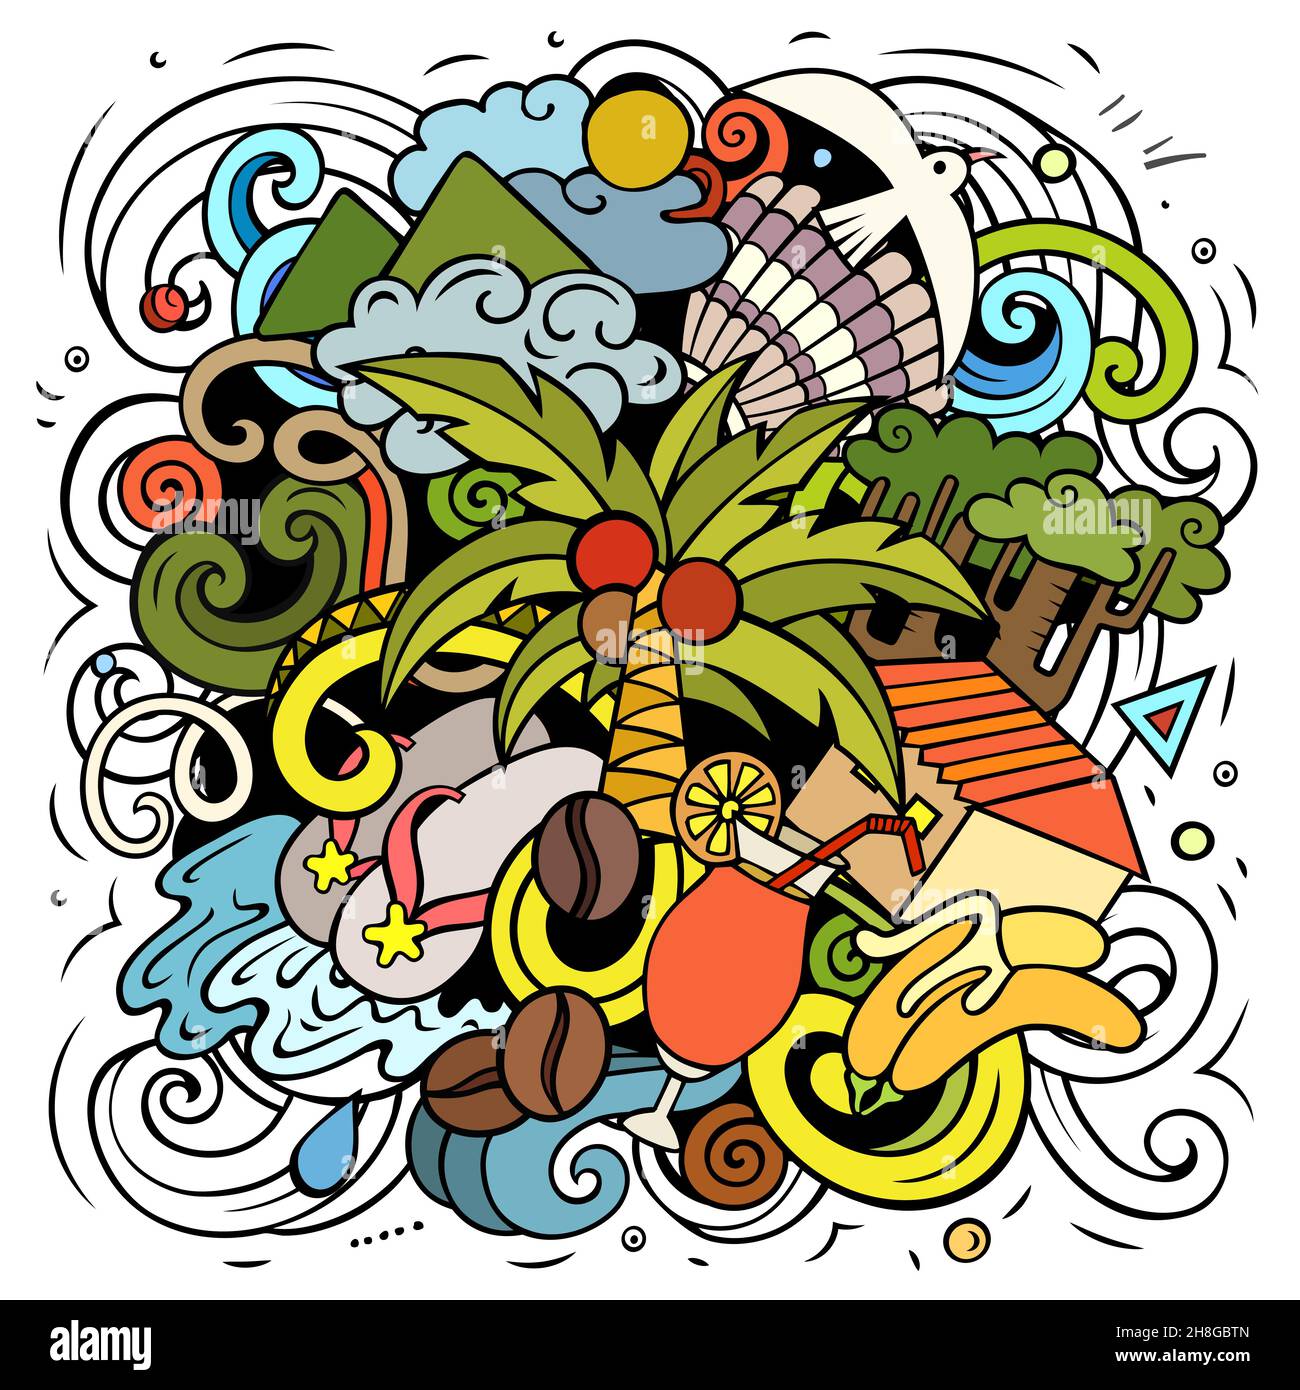 Haiti cartoon vettore Doodle illustrazione. Composizione colorata e dettagliata con molti oggetti e simboli esotici delle isole. Illustrazione Vettoriale